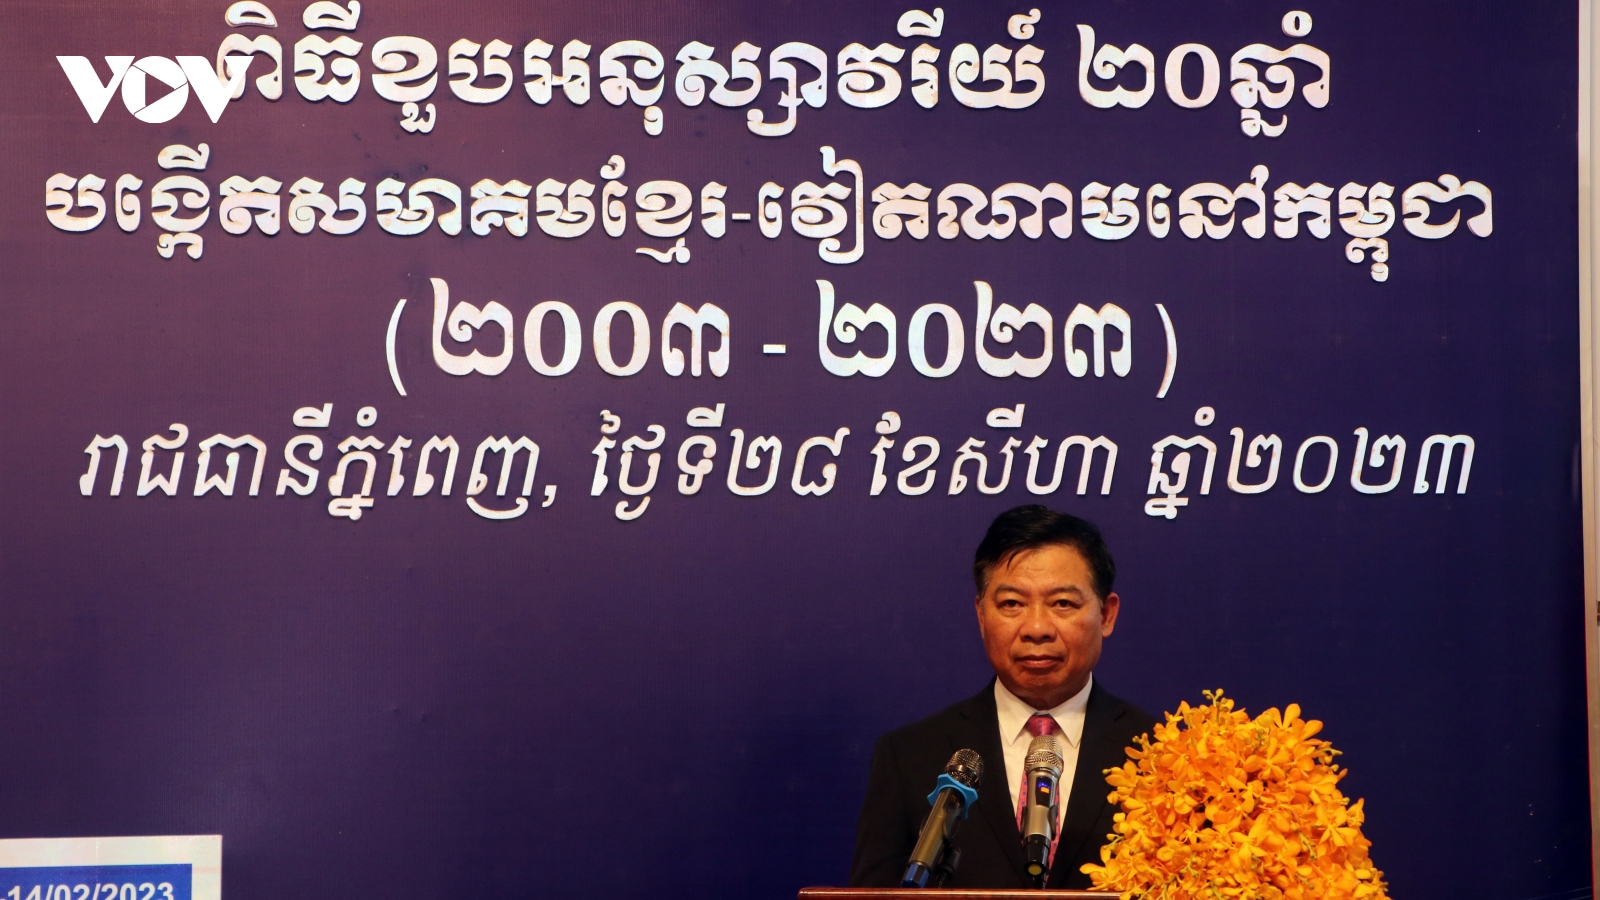 Kỷ niệm 20 năm thành lập Hội Khmer - Việt Nam tại Campuchia